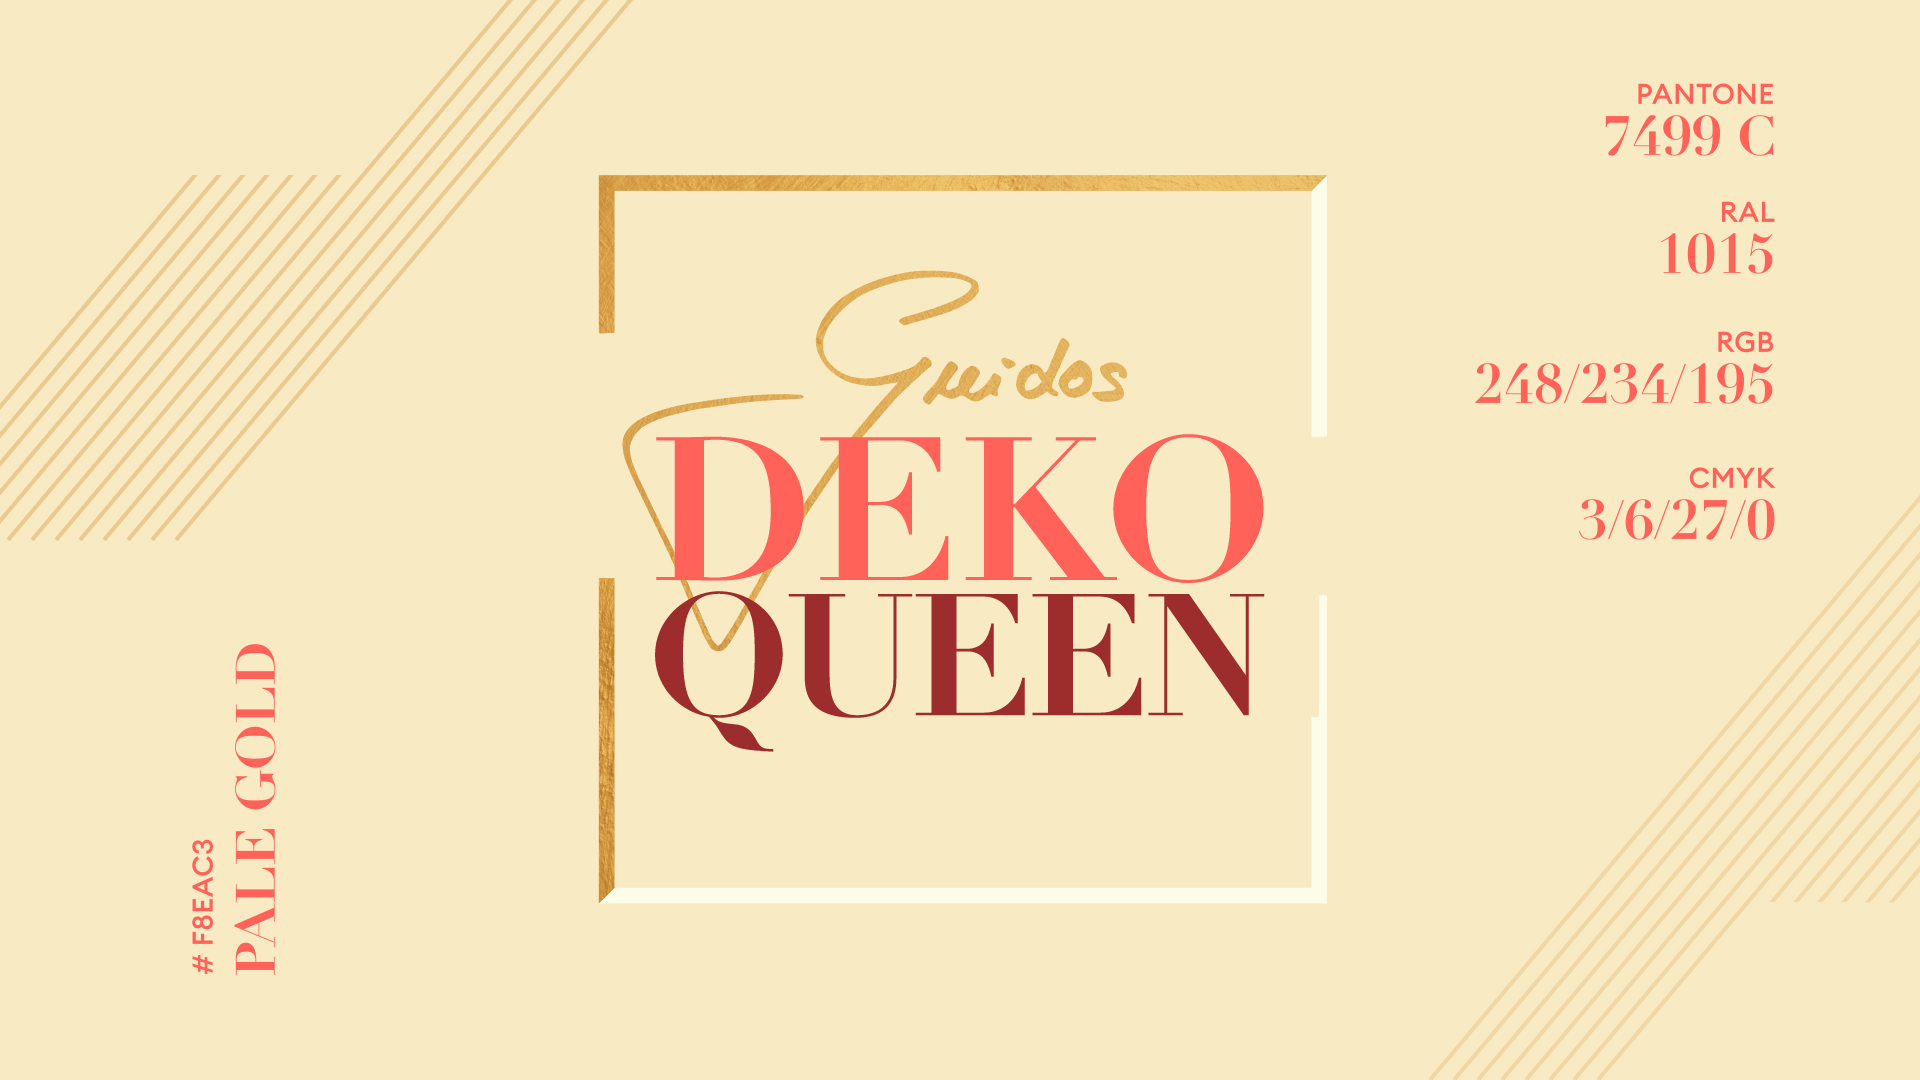 Guidos Deko Queen